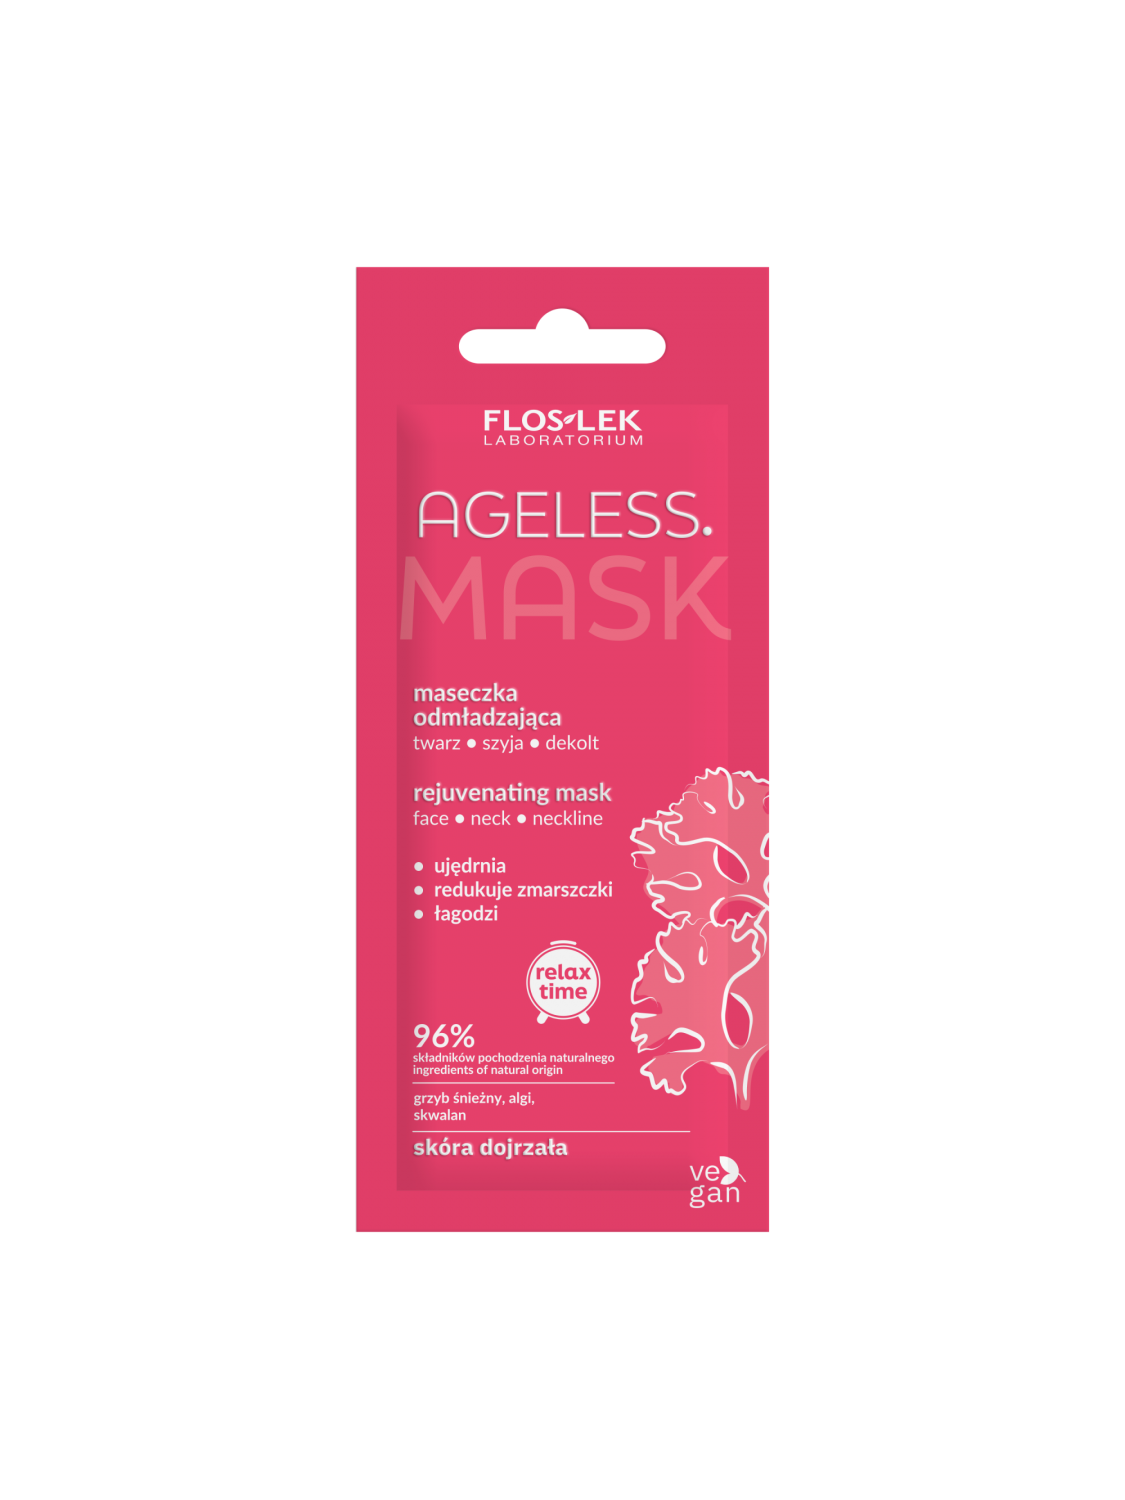 AGELESS. Verjüngungsmaske für Gesicht, Hals und Dekolleté 6 ml - Floslek